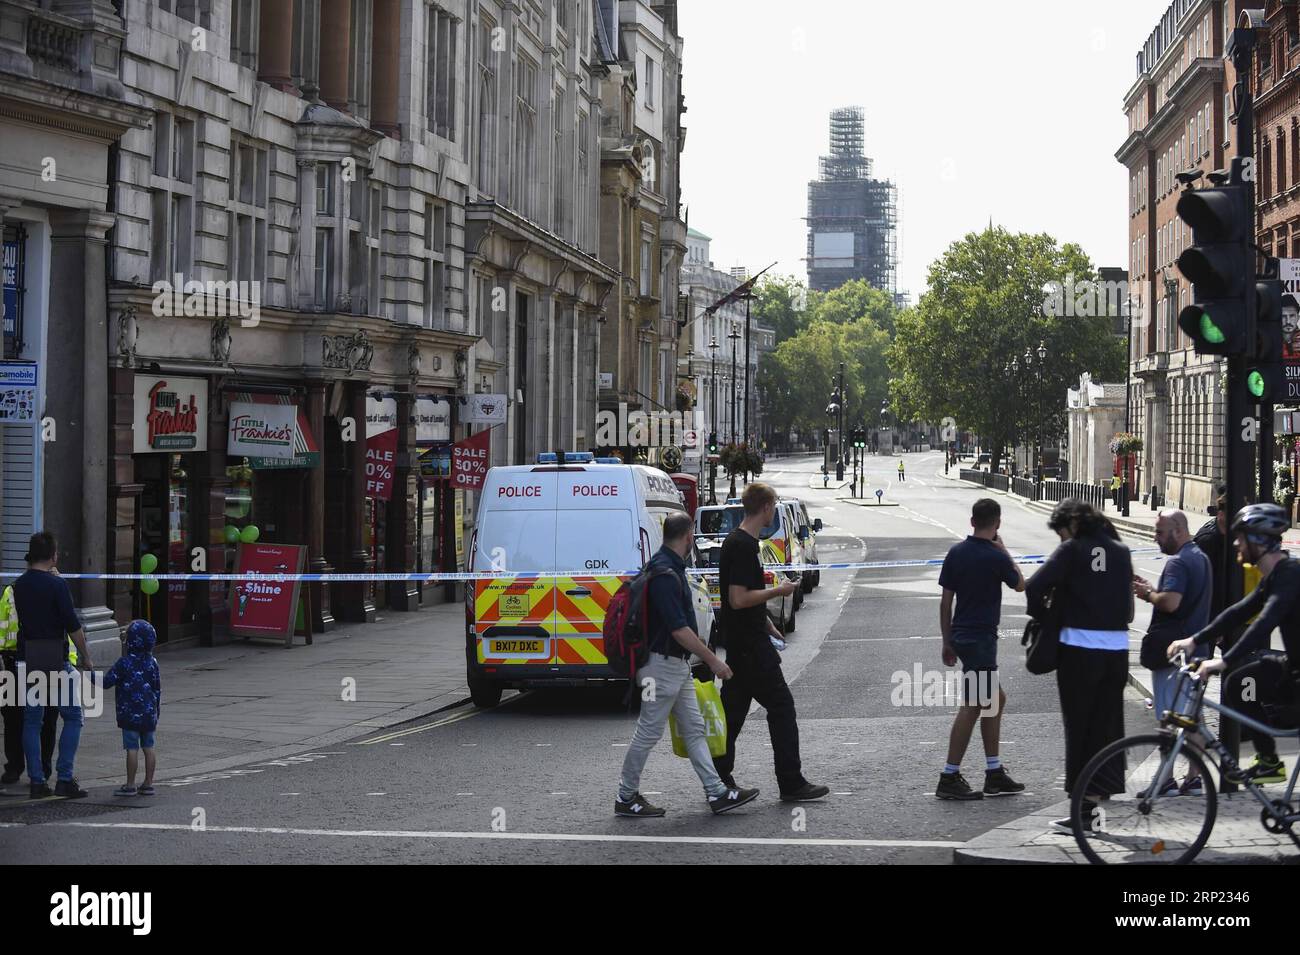 (180814) -- LONDRES, 14 août 2018 -- la police métropolitaine de Londres boucle la zone près des chambres du Parlement de la Grande-Bretagne à Londres, Grande-Bretagne, 14 août 2018. Un homme a été arrêté pour suspicion d'infractions terroristes après qu'une voiture s'est écrasée contre des barrières devant les chambres du Parlement britannique, a déclaré mardi la police locale. (Qxy) GRANDE-BRETAGNE-LONDRES-PARLEMENT-ACCIDENT DE VOITURE StephenxChung PUBLICATIONxNOTxINxCHN Banque D'Images